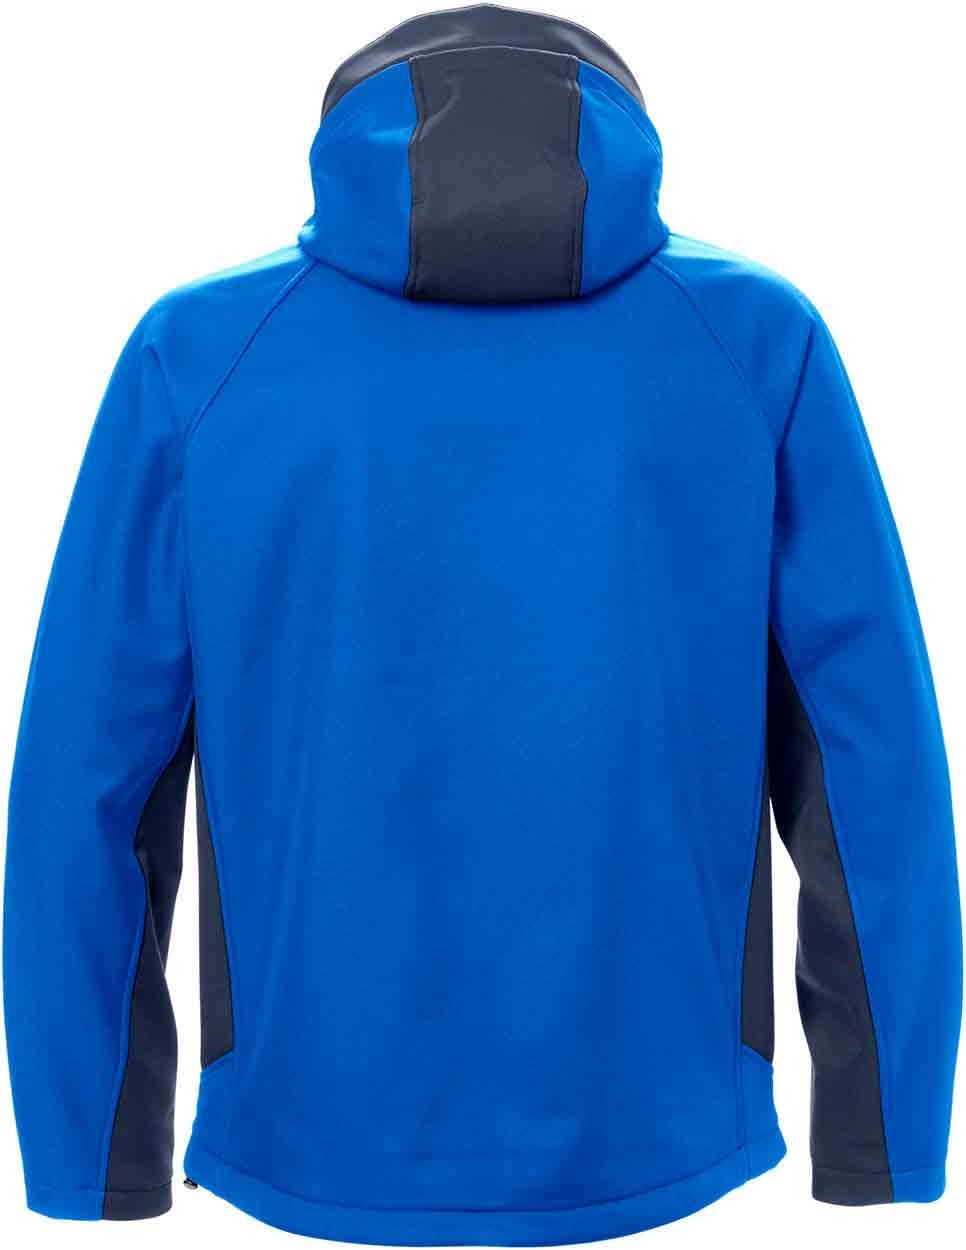 Acode WindWear softshell jacket 1414 SHI - Workwear Fleeces and Softshells  - Workwear Tops - Workwear - Best Workwear